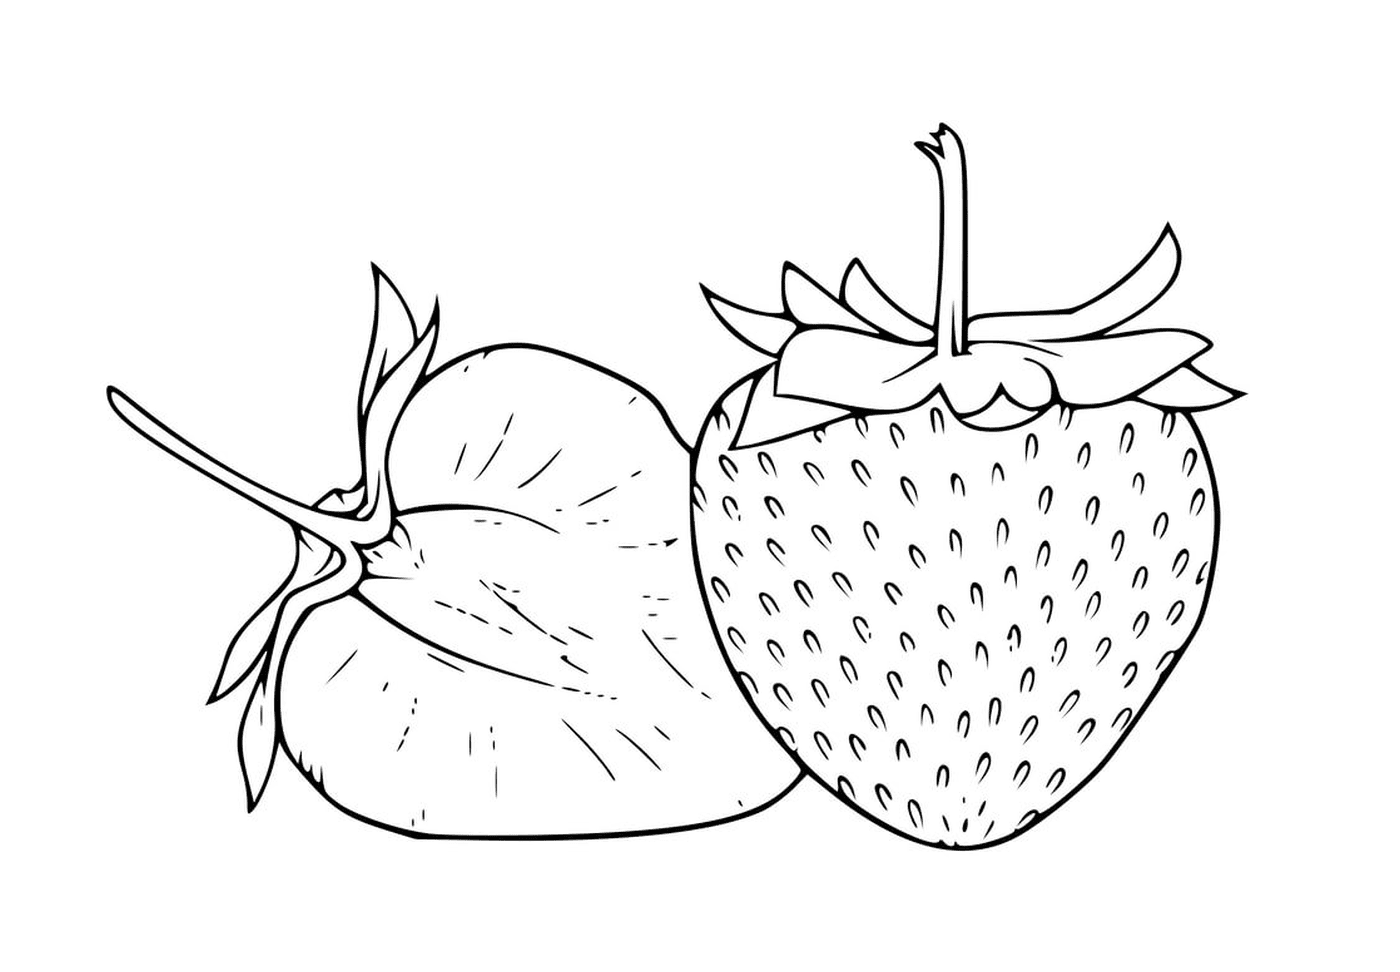  Erdbeere und Melone Schnitt realistisch 